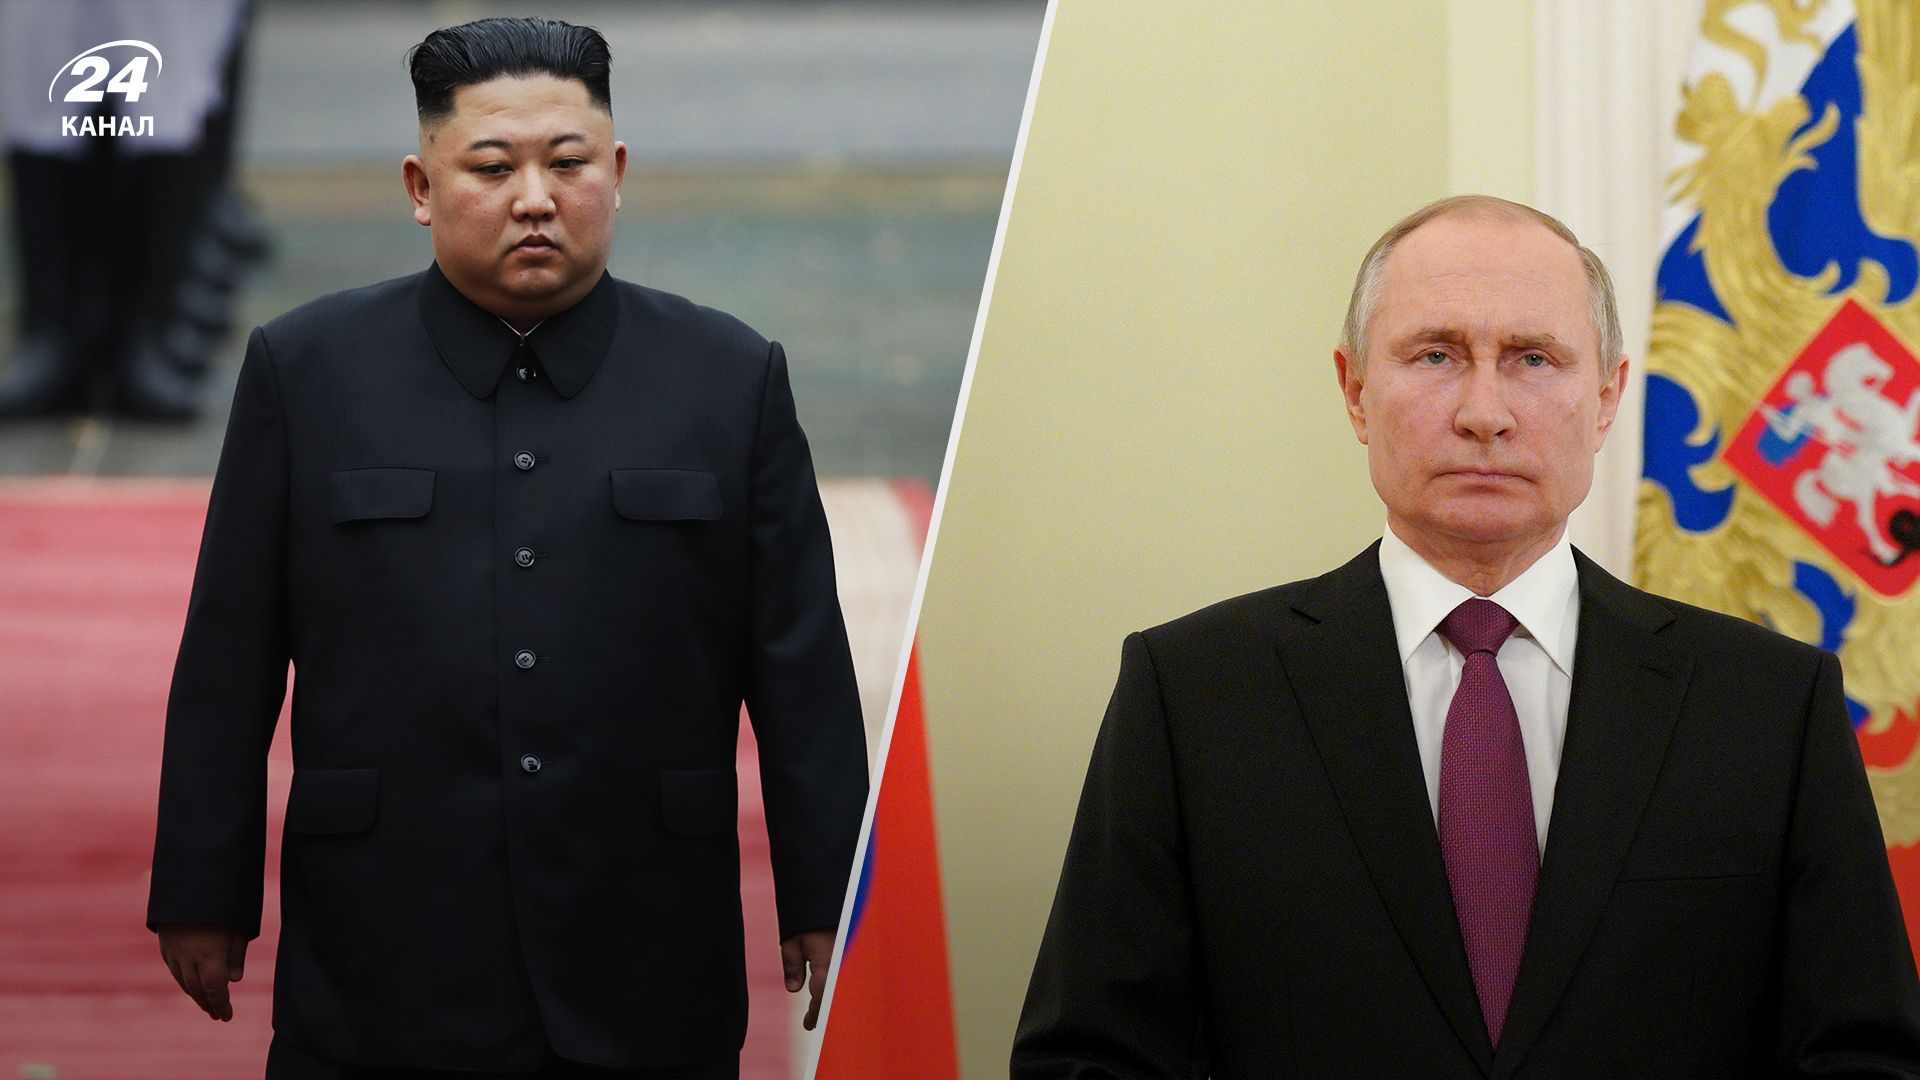 Ким Чен Ын встретился с Путиным